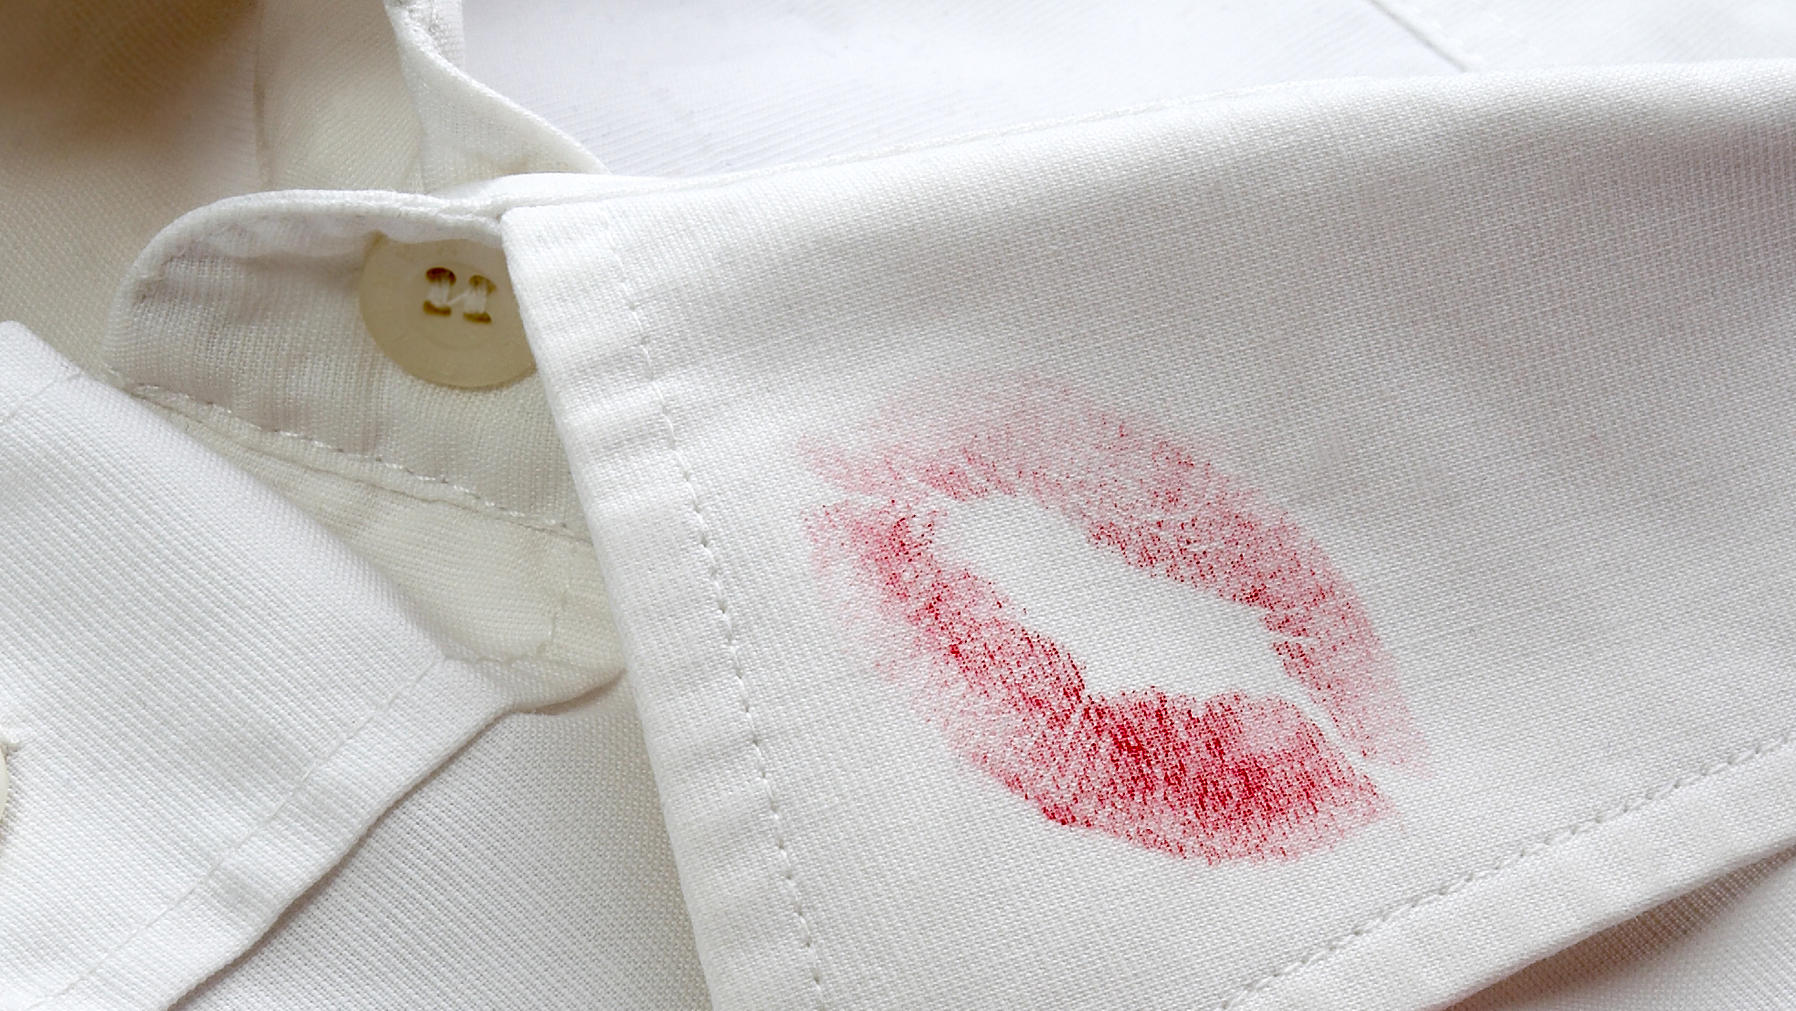 Lippenstift auf Kleidung mit Haarspray beseitigen .